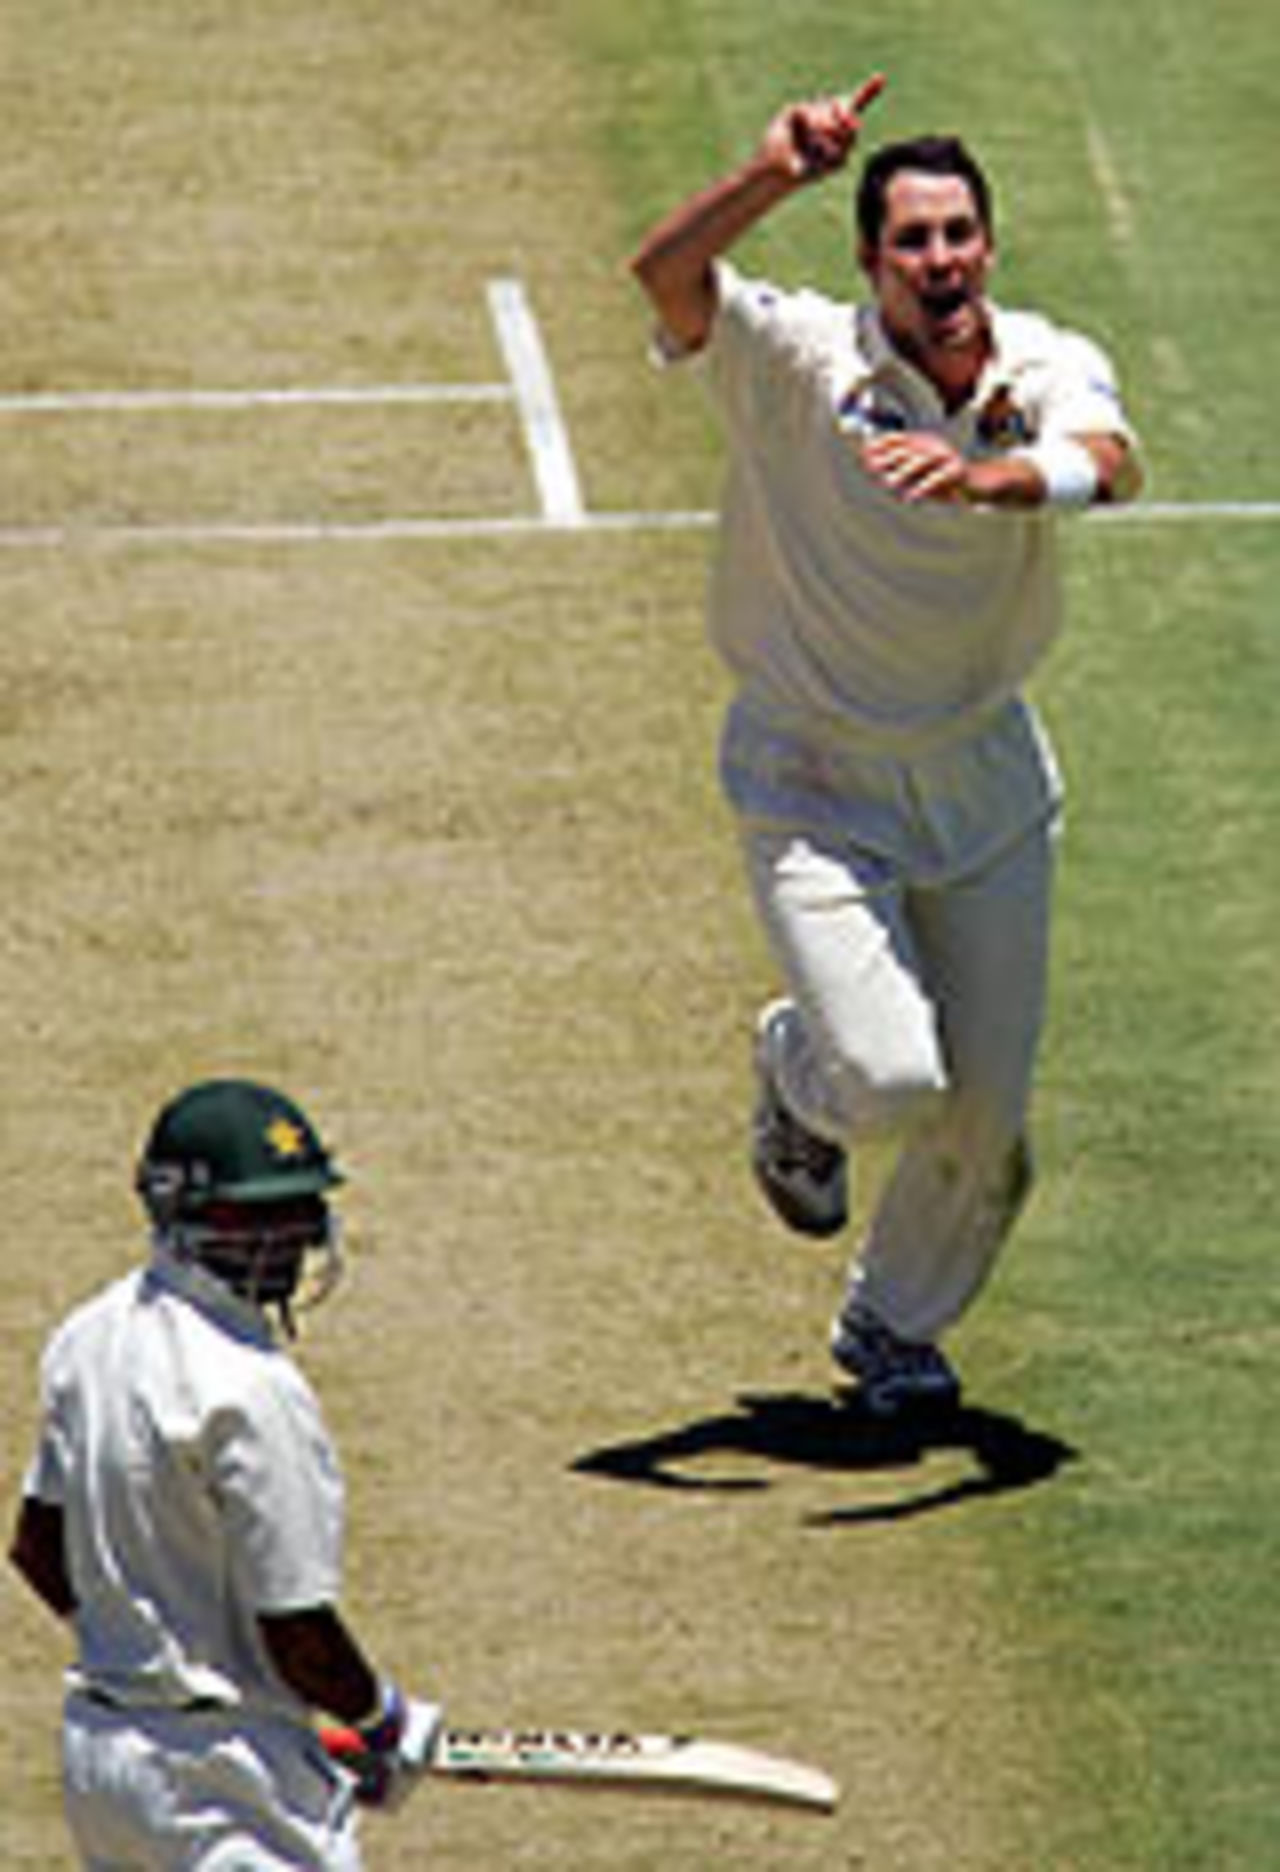 Ben Edmondson dismisses Salman Butt, Western Australia v Pakistanis, Perth, December 9, 2004